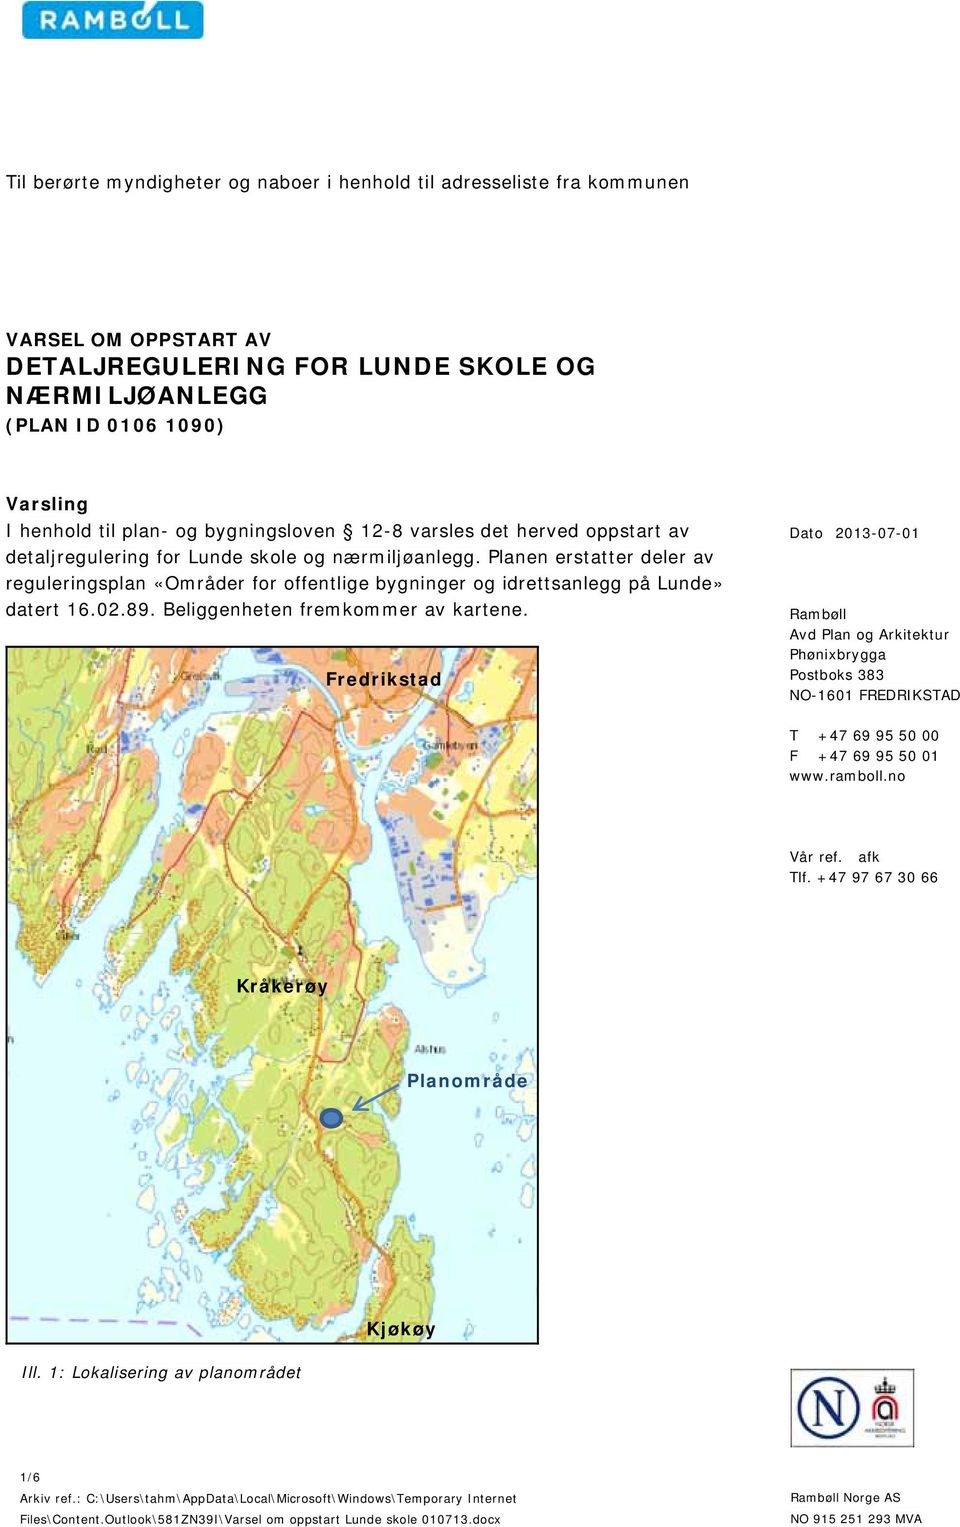 Planen erstatter deler av reguleringsplan «Områder for offentlige bygninger og idrettsanlegg på Lunde» datert 16.02.89. Beliggenheten fremkommer av kartene.